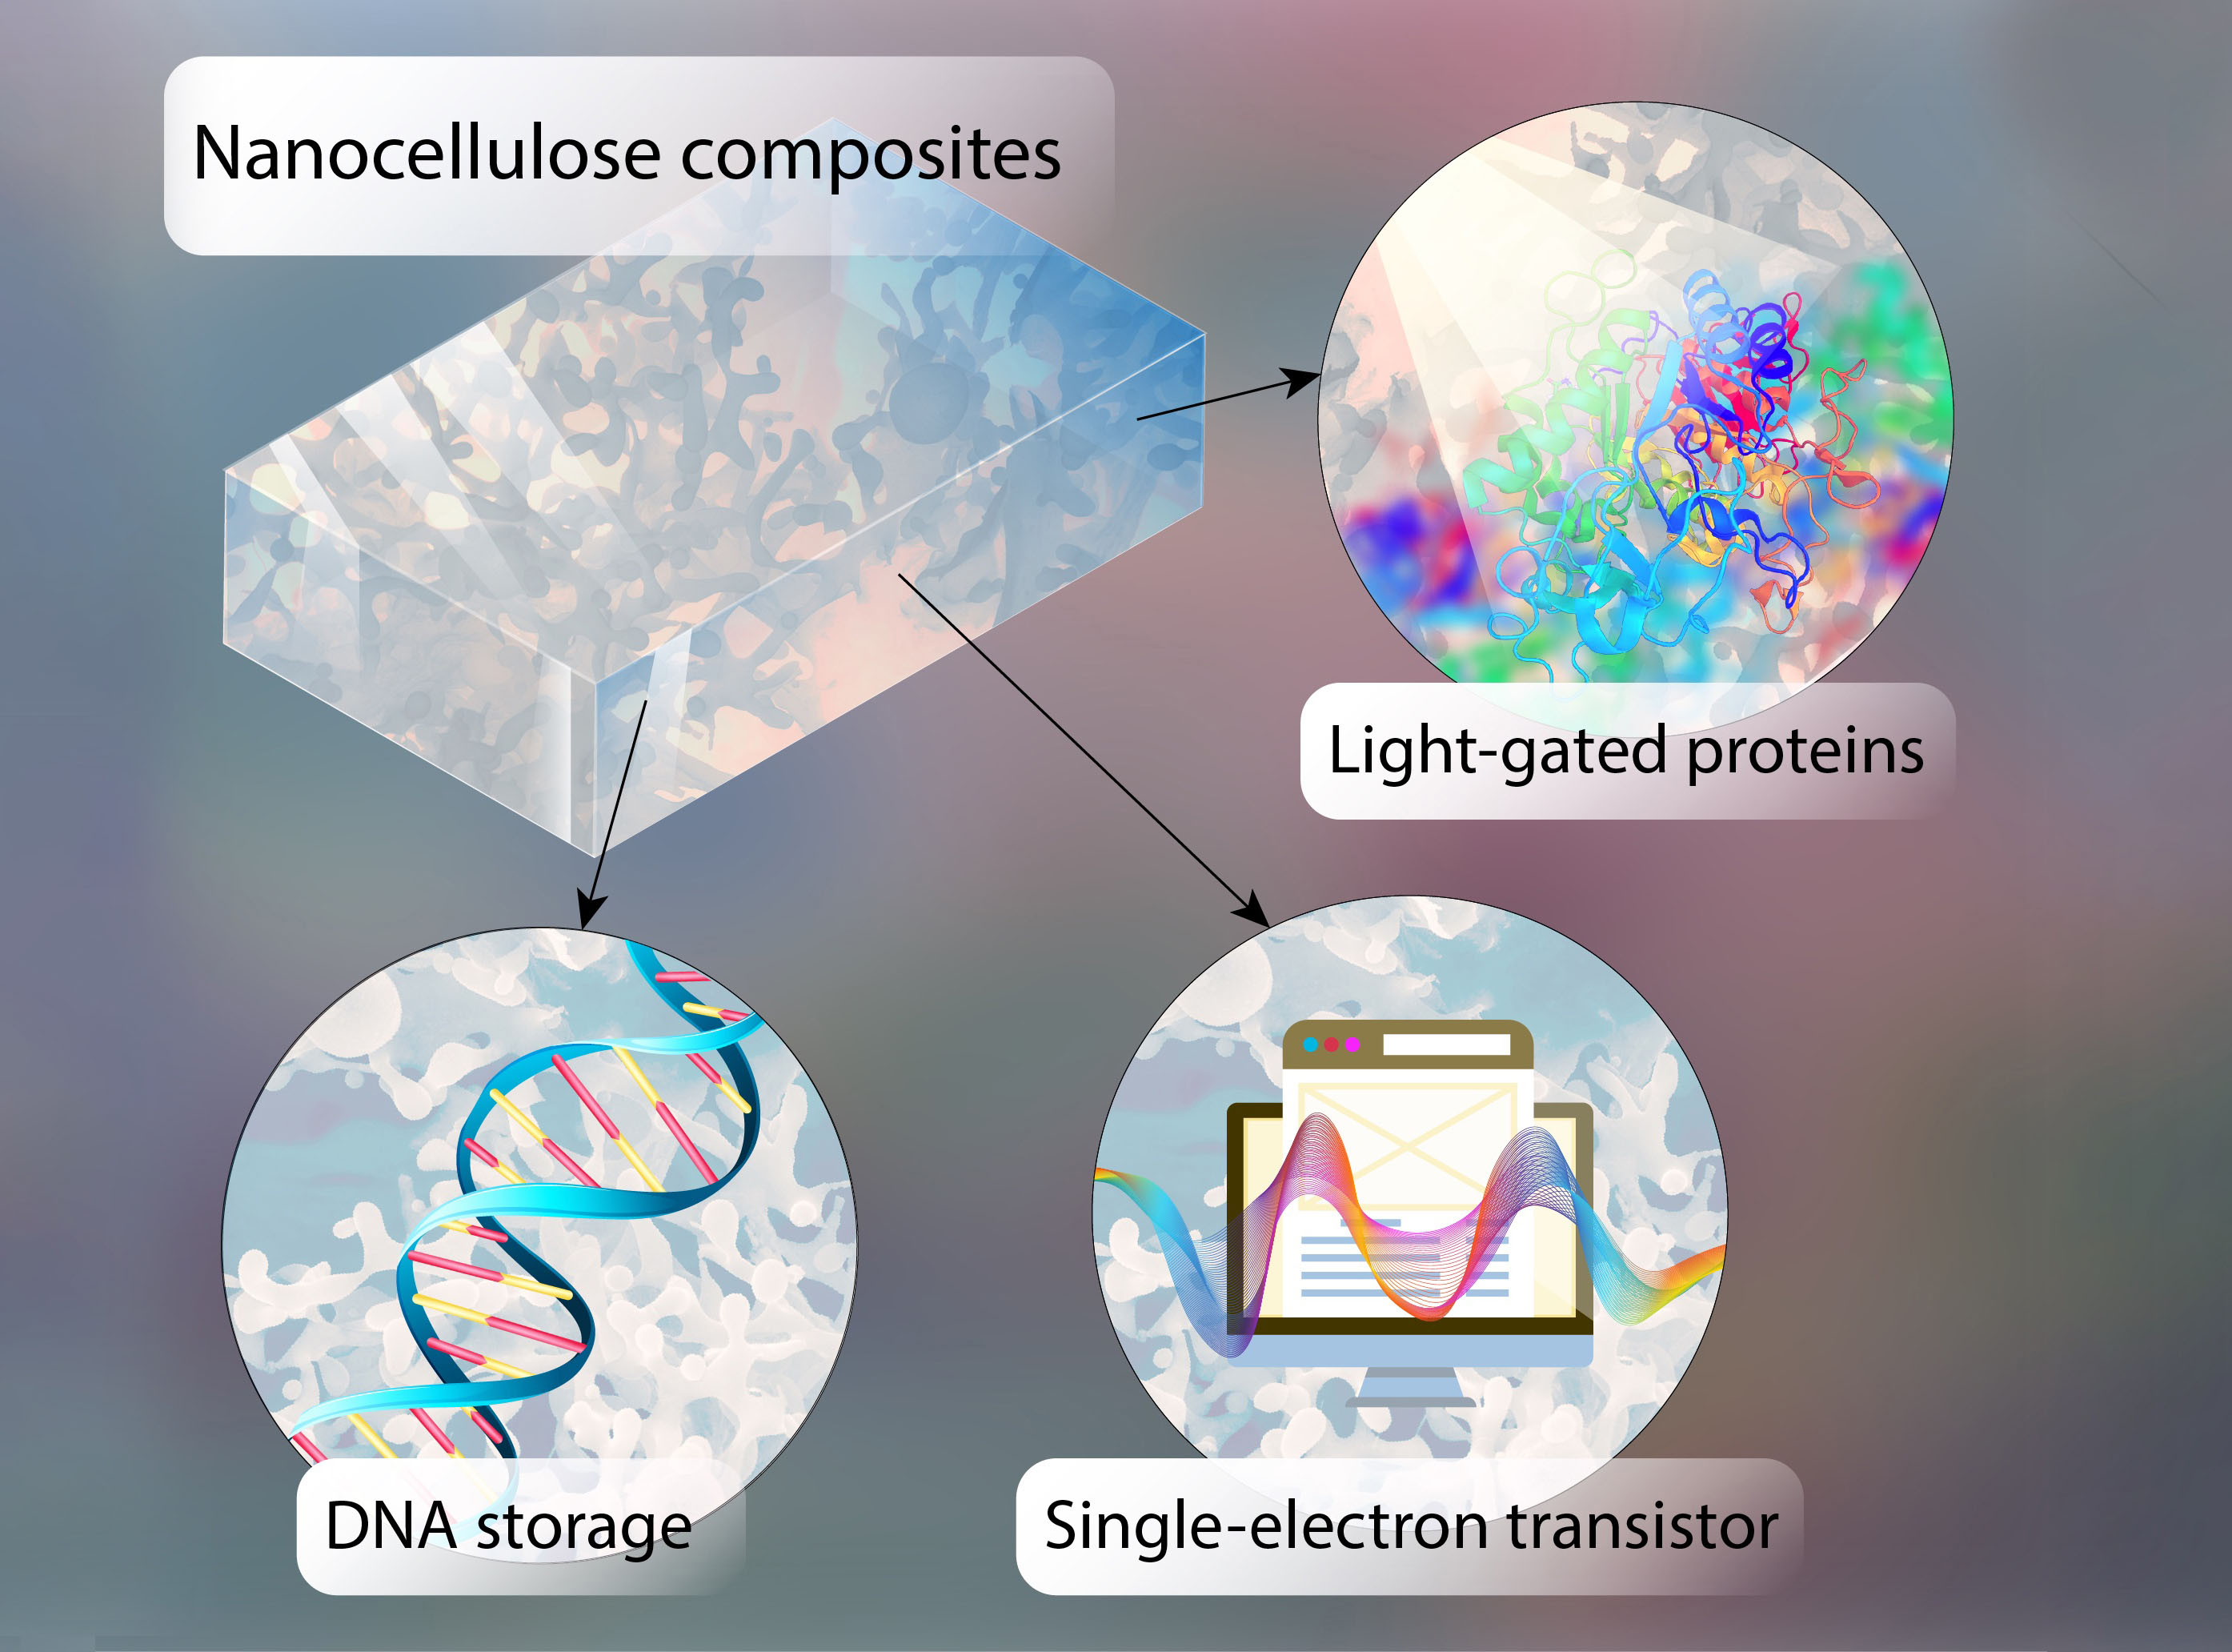 Le informazioni possono essere archiviate sotto forma di DNA su chip realizzati in nanocellulosa semiconduttrice